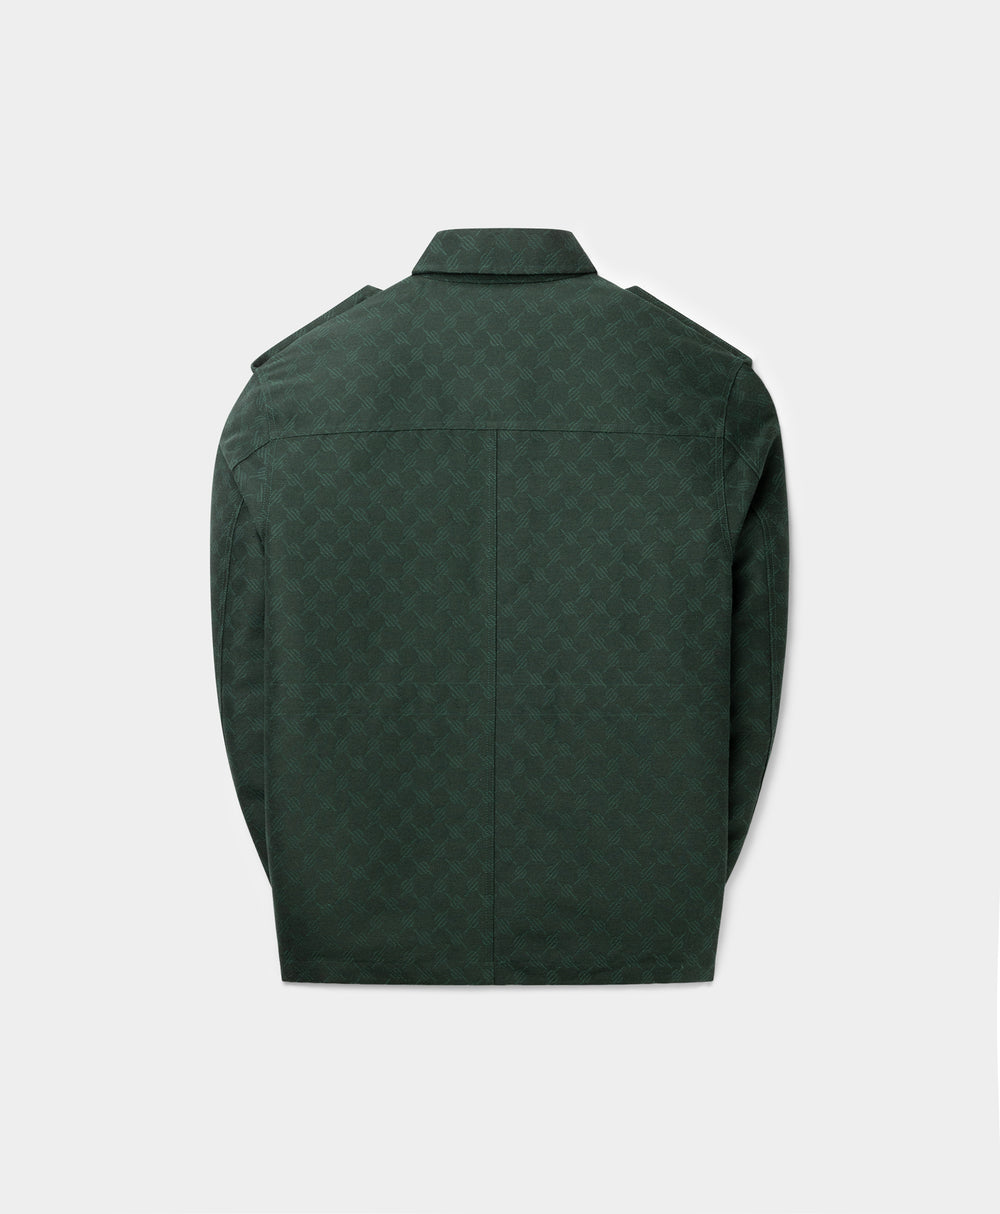 DP - Pine Green Imani Monogram Jacket - Packshot - Rear